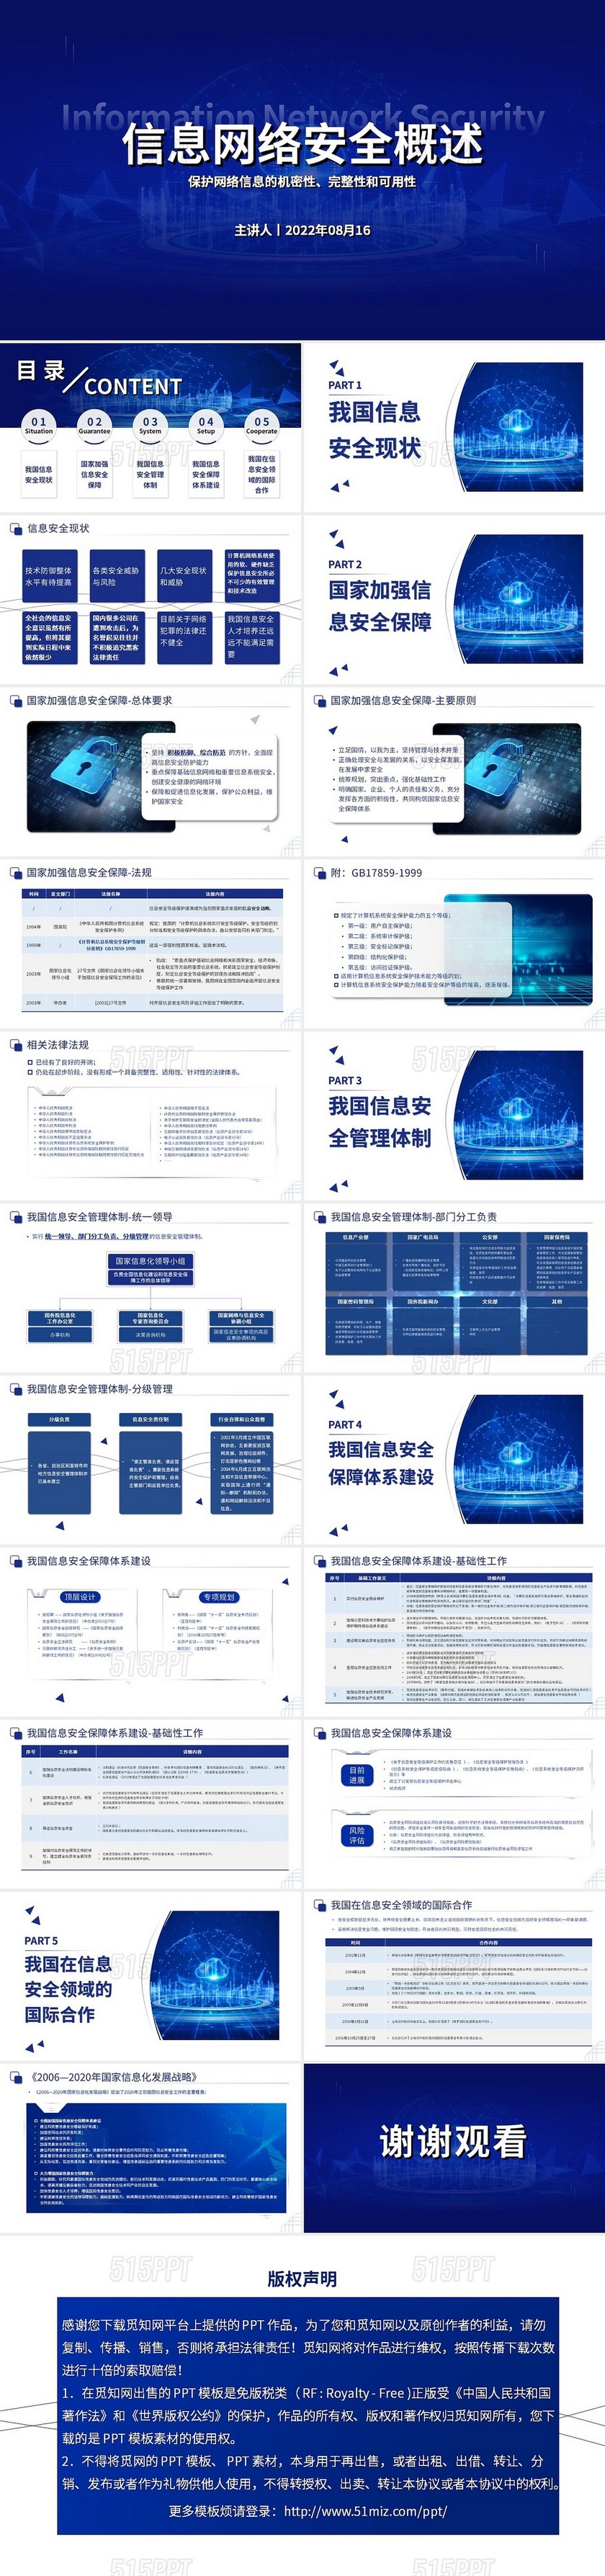 蓝色商务简约线条信息网络安全概述商务通用PPT模板信息网络安全概述2